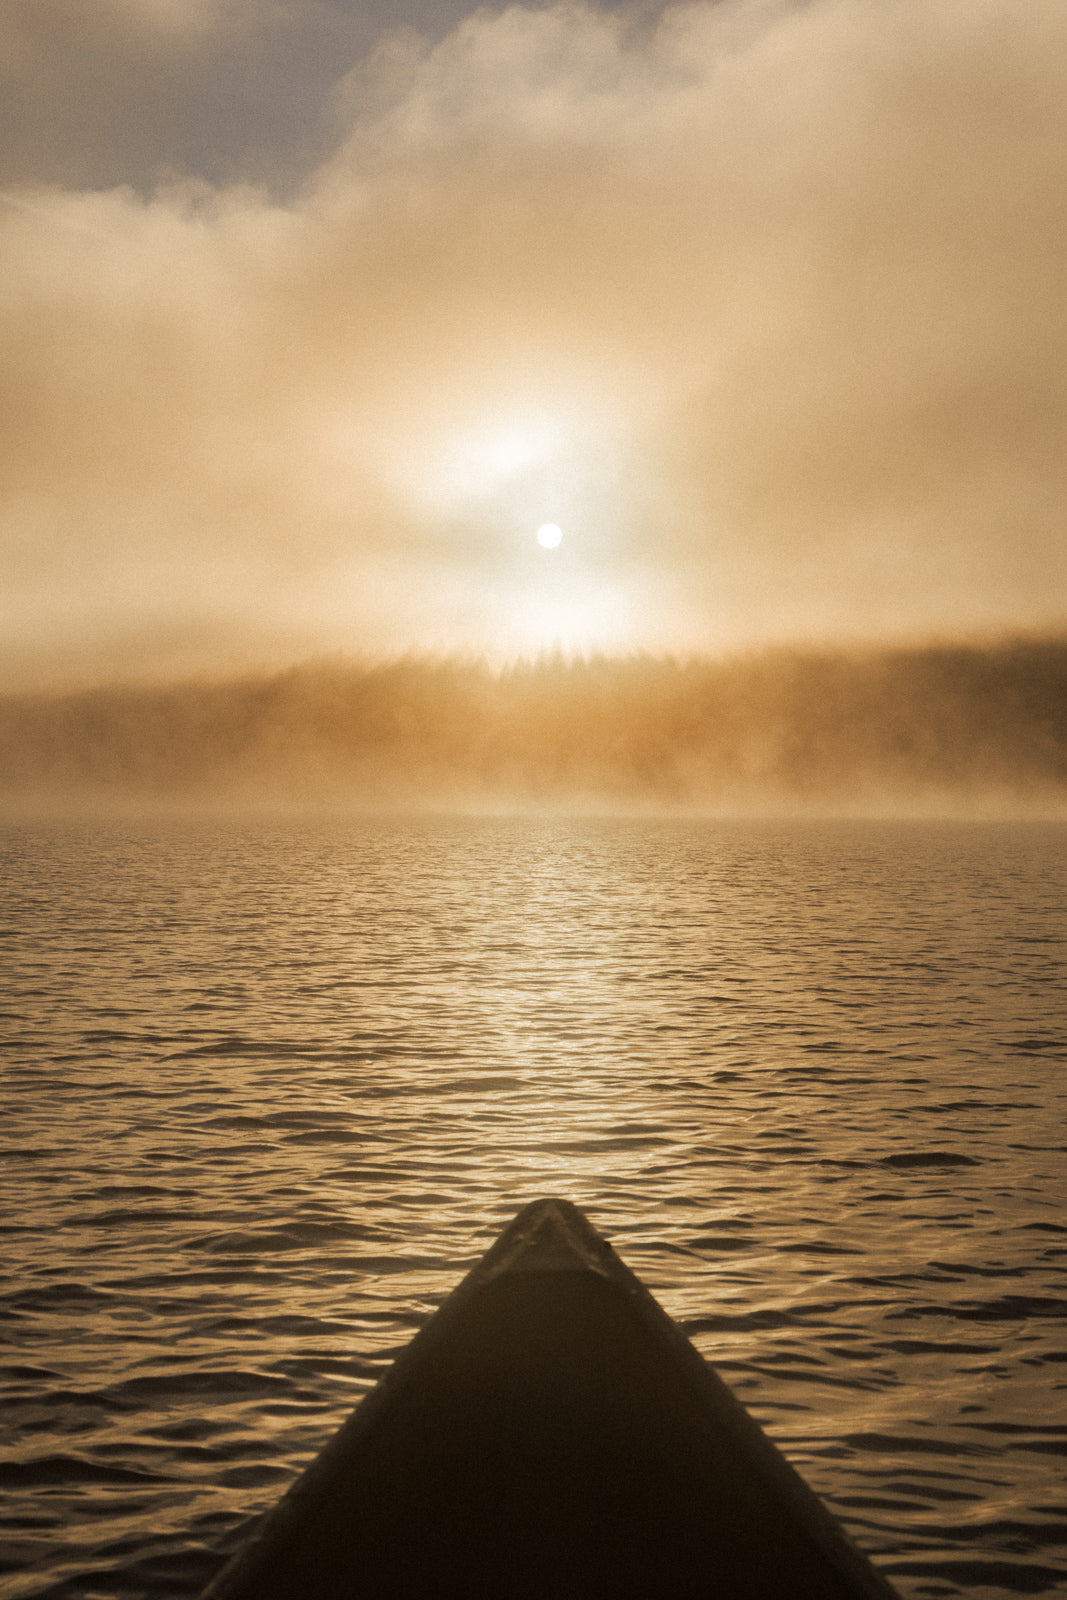 Campbell Lake Sunrise, Sayward Canoe Circuit